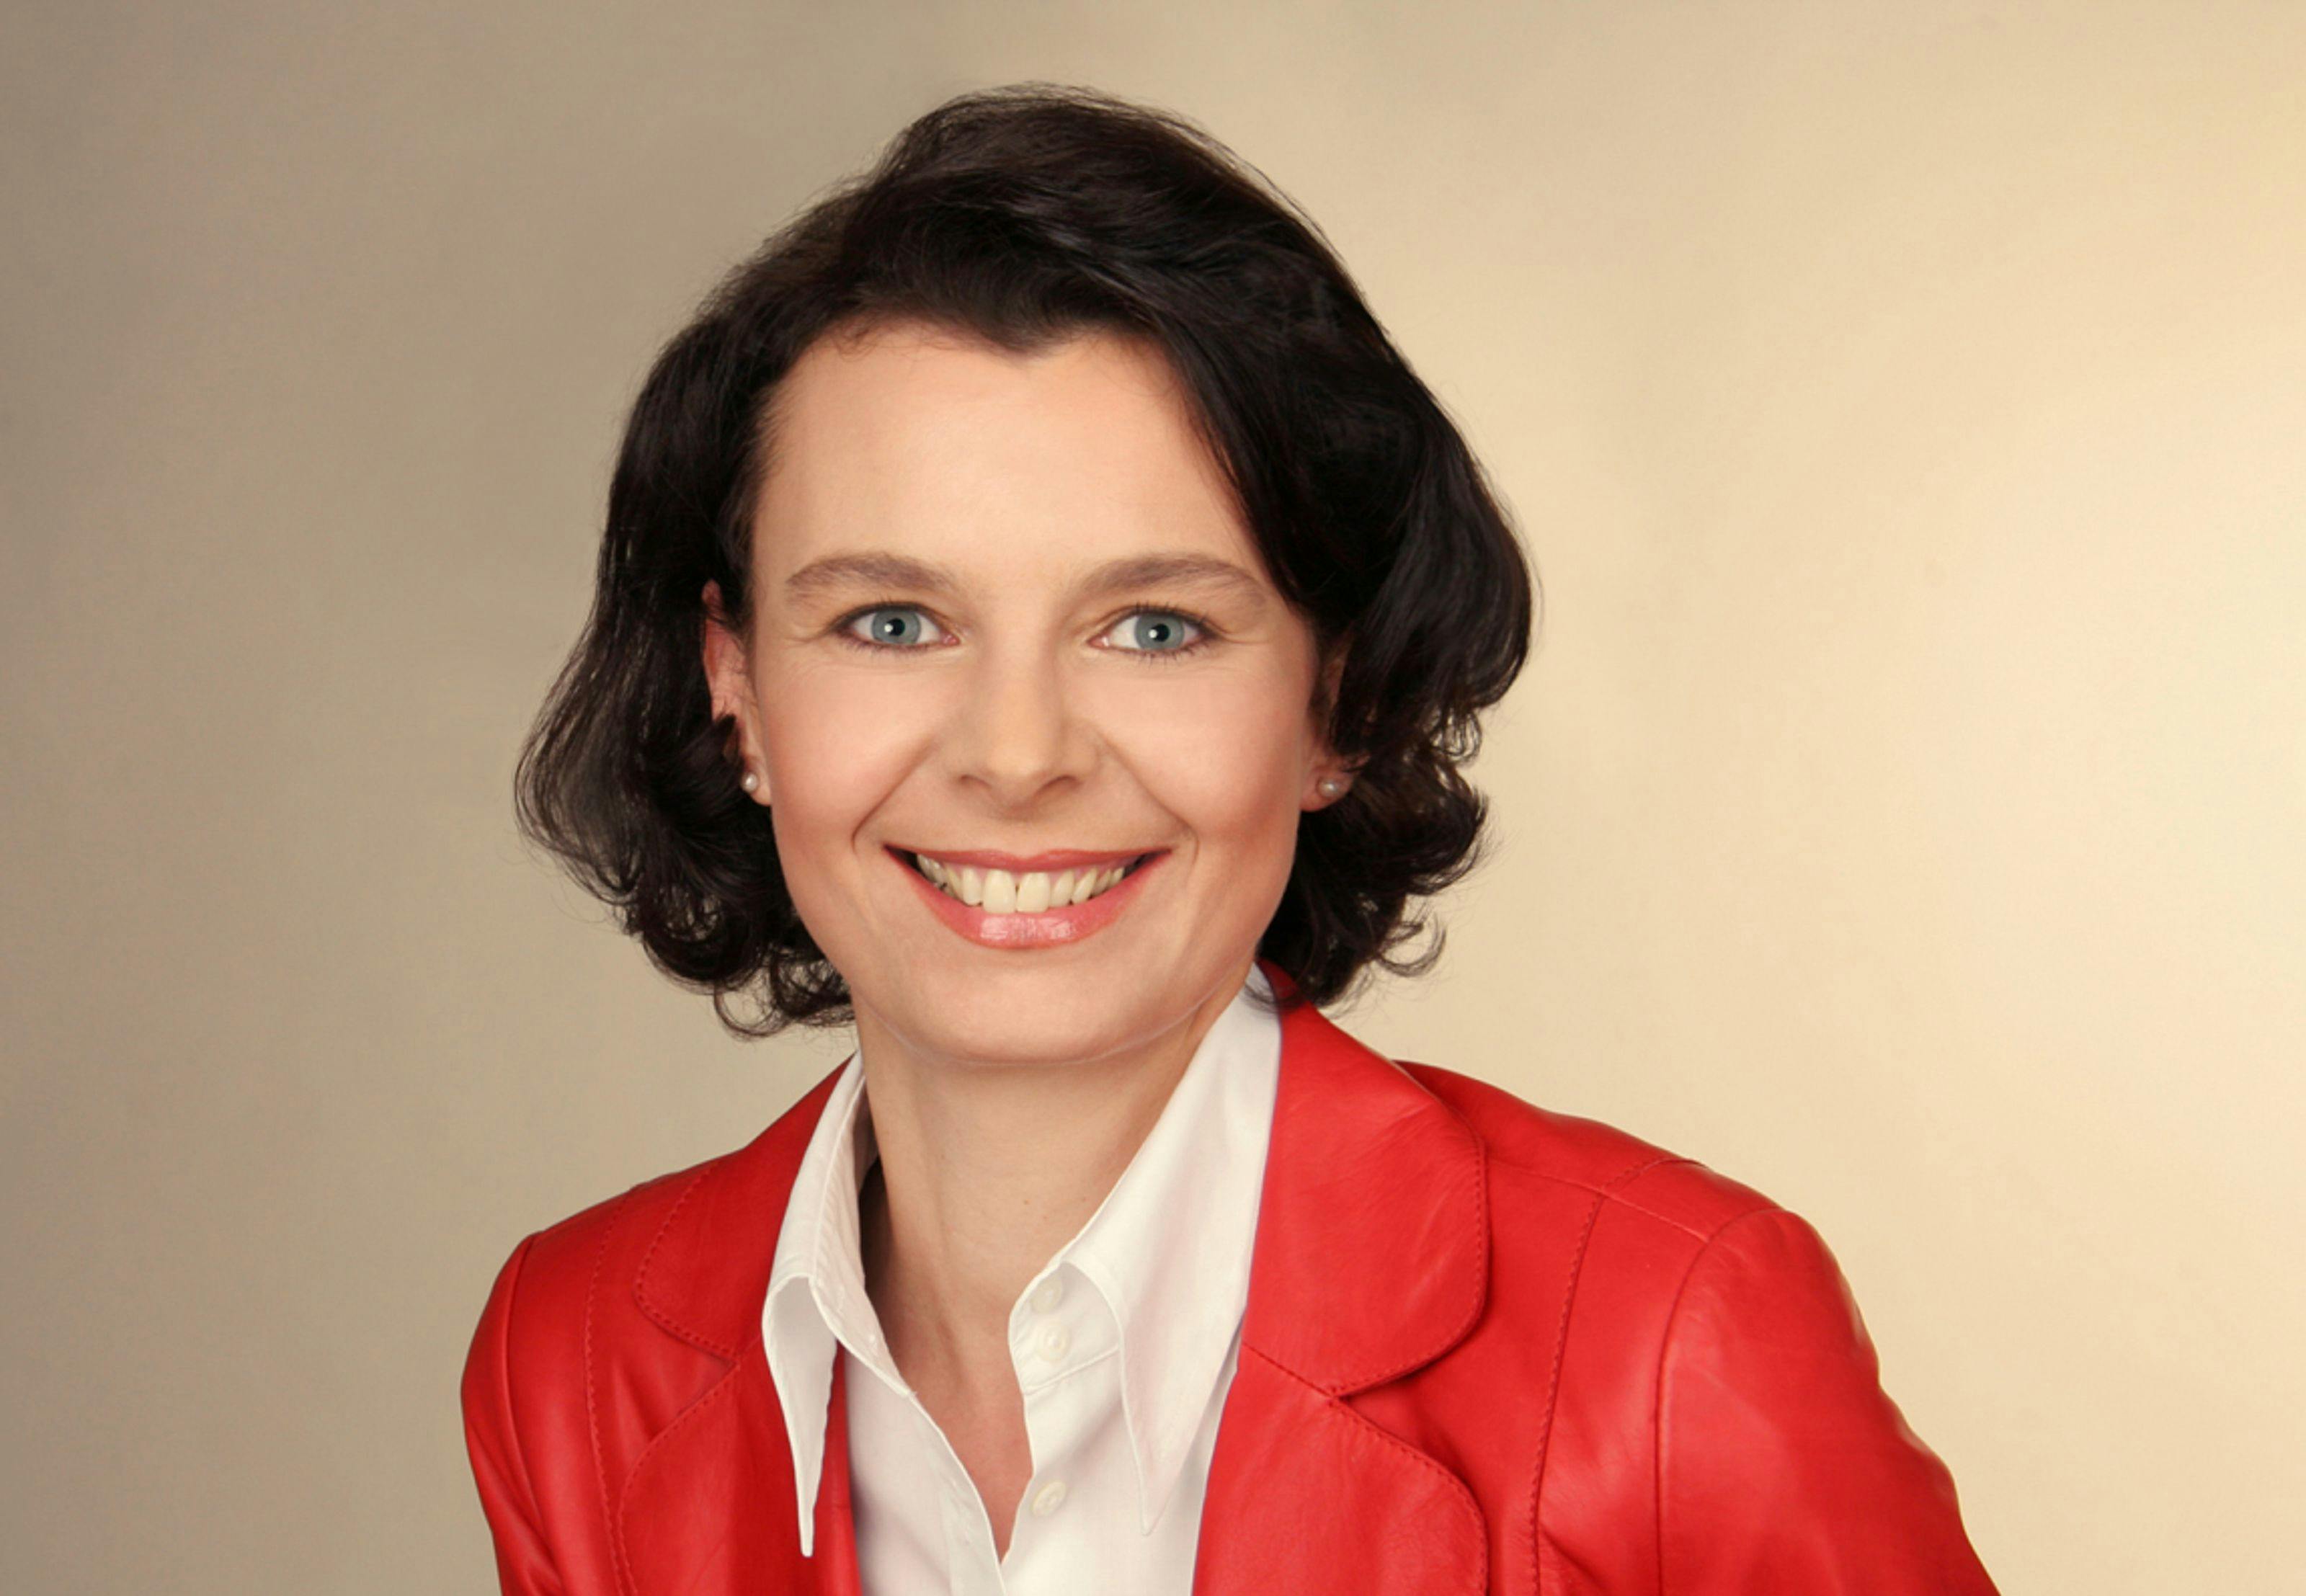 Manuela Höhne devient Directrice de la communication par intérim de Bugatti